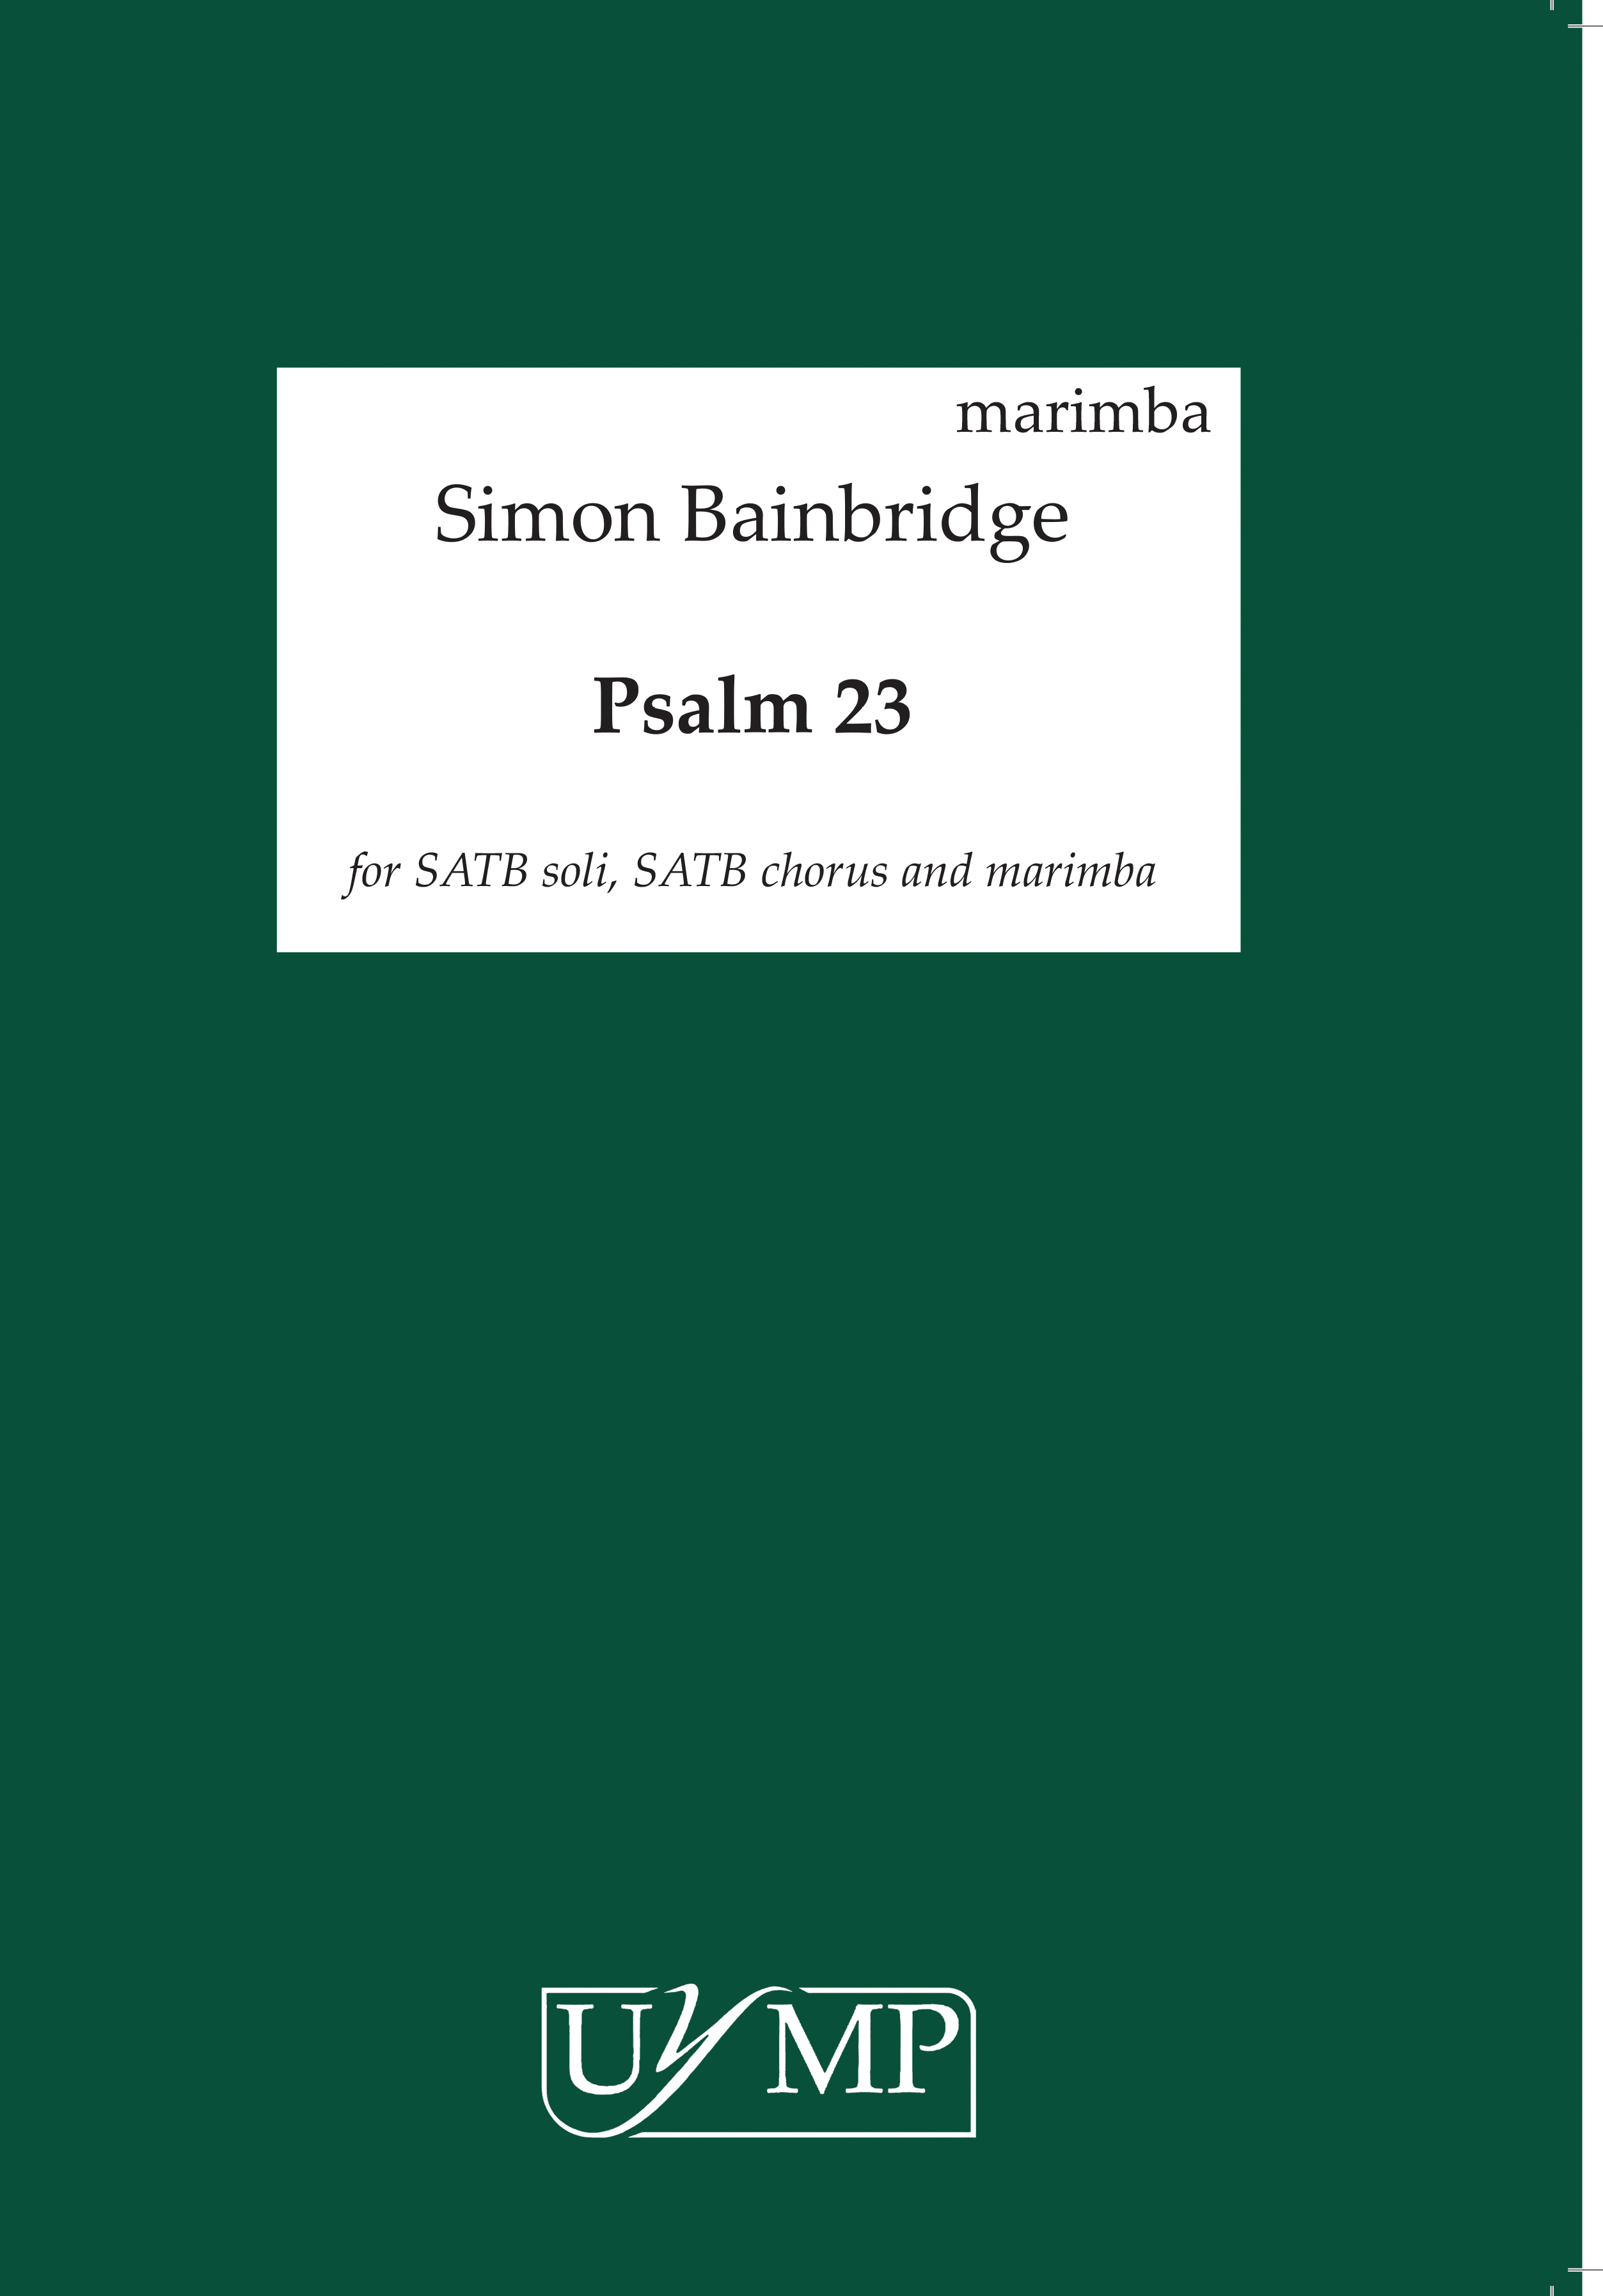 Simon Bainbridge: Psalm 23: Marimba: Part